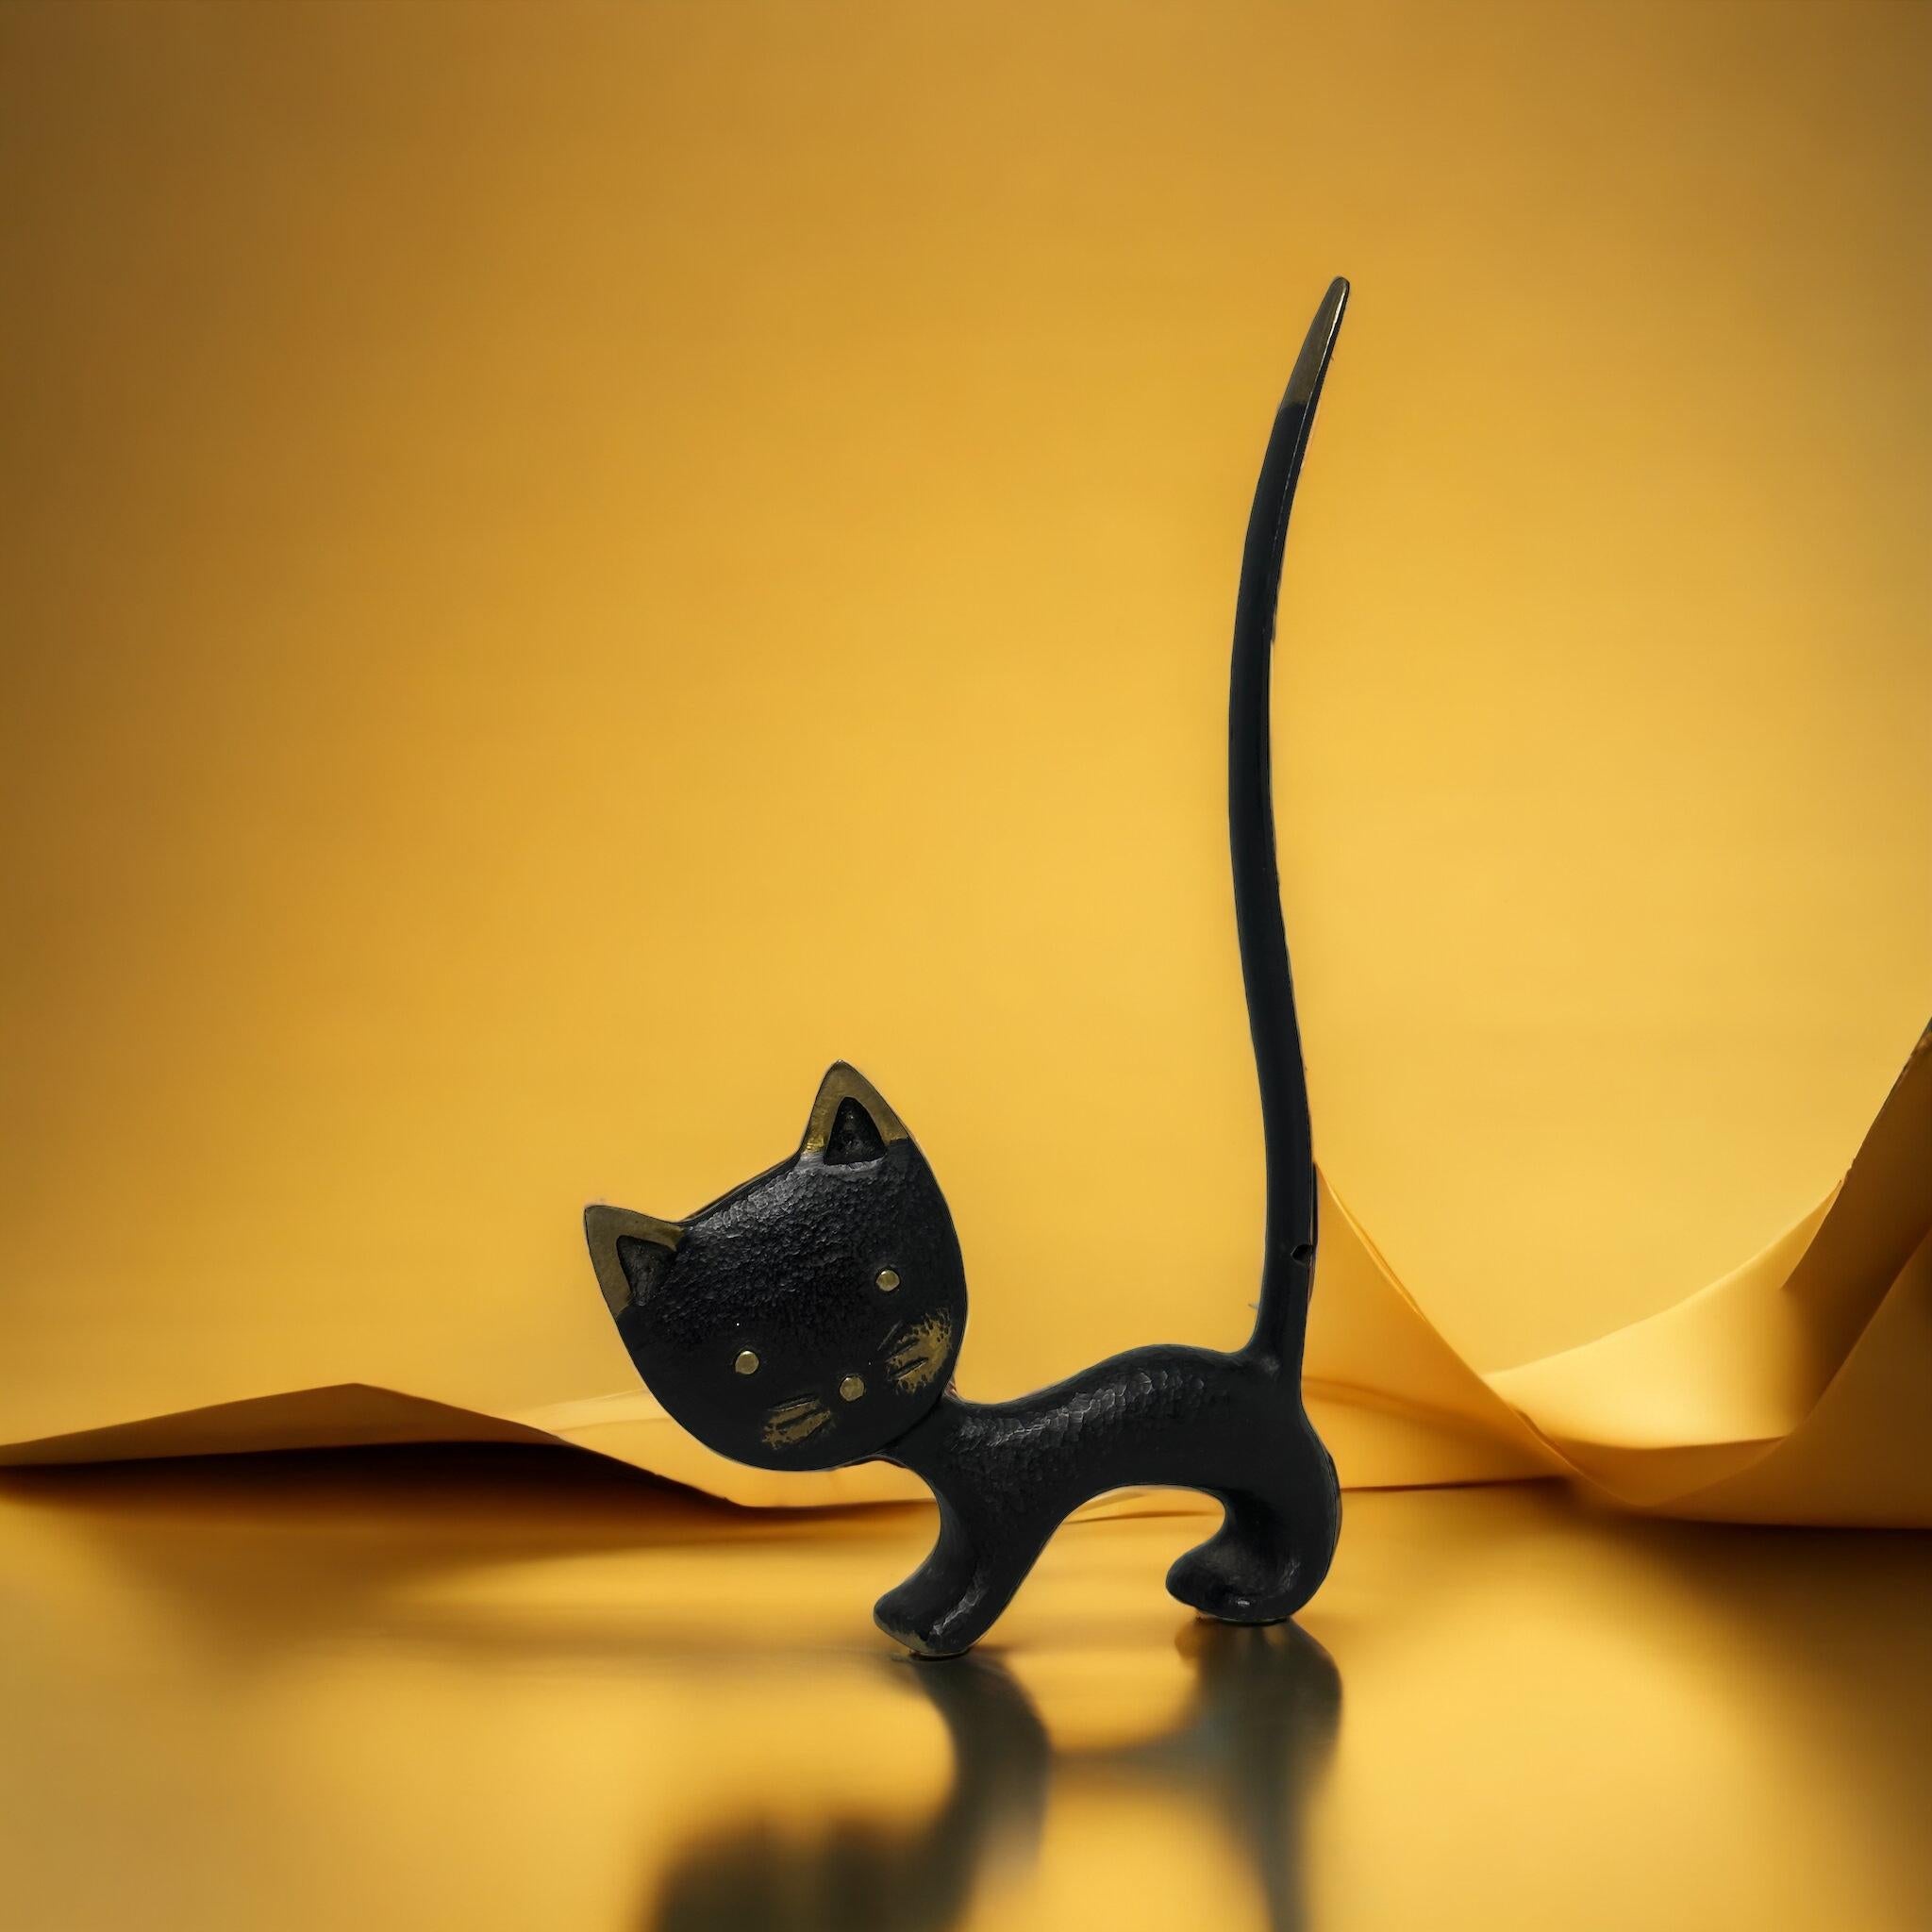 Klassische frühe 1950er Jahre österreichische Bosse Katze Figur Sammlerstück. Eine schöne Ergänzung für Ihr Zimmer oder einfach für Ihre Sammlung österreichischer Bronzegegenstände. Gefunden bei einem Nachlassverkauf in Wien,